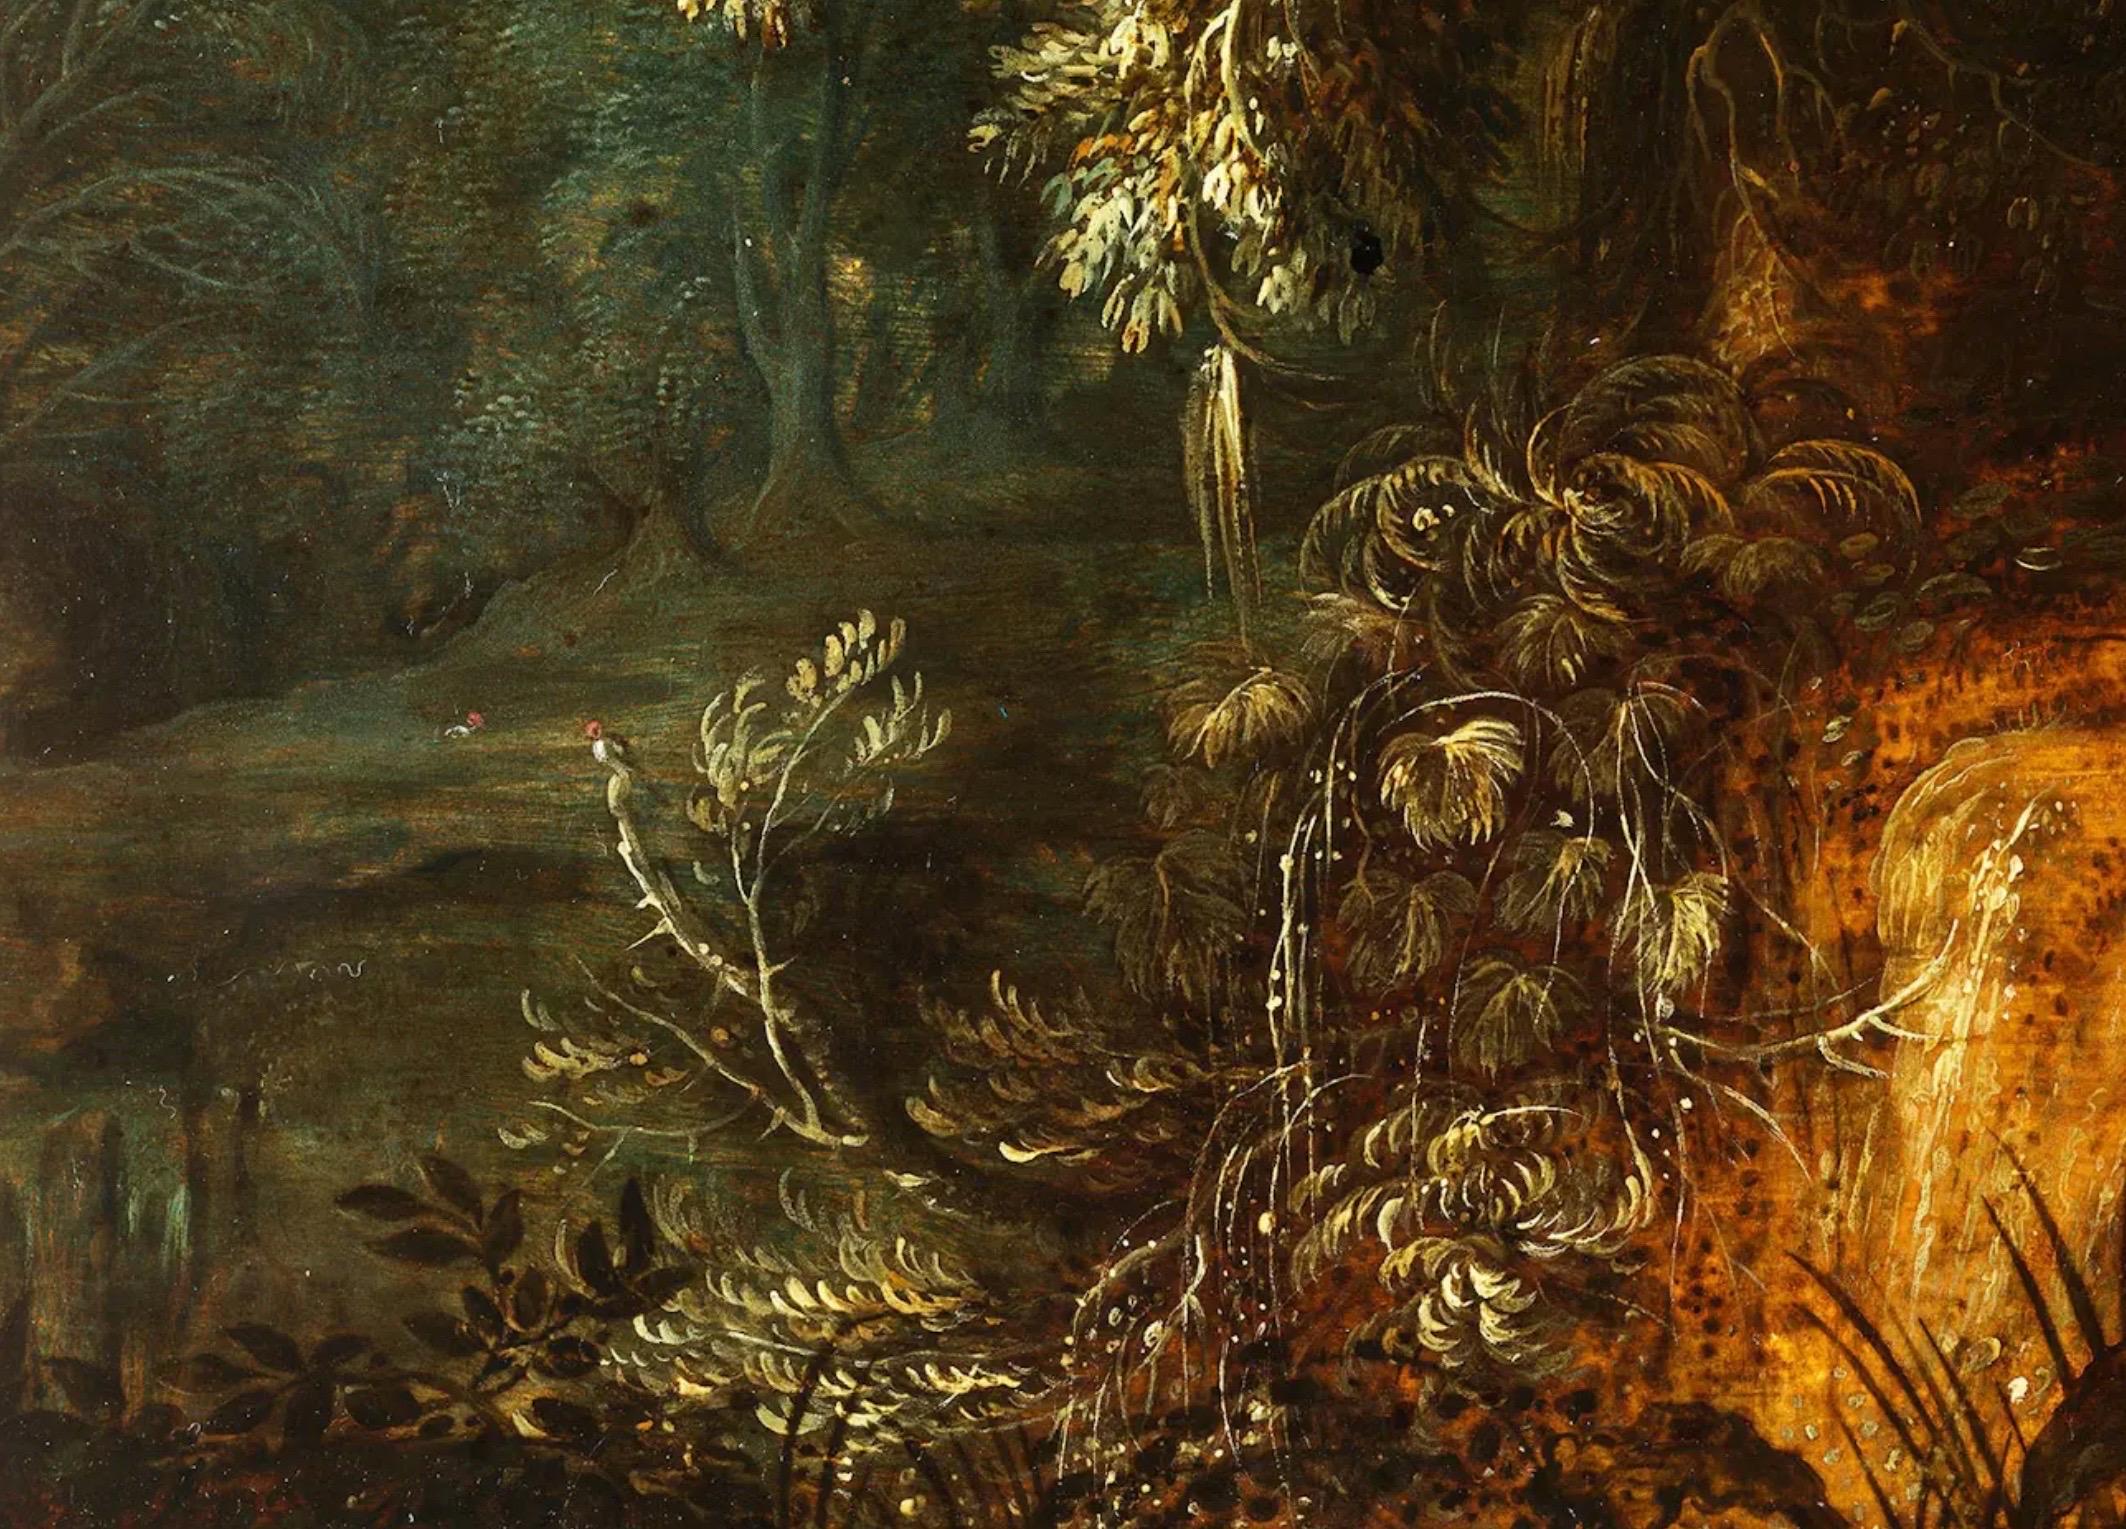 Peinture flamande du 17e siècle représentant un paysage de forêt avec un chêne majestueux

Alexander Keirincx, né vers 1600 à Anvers, en Belgique, est un éminent paysagiste flamand du Siècle d'or néerlandais. Il a d'abord été formé par son père, Jan